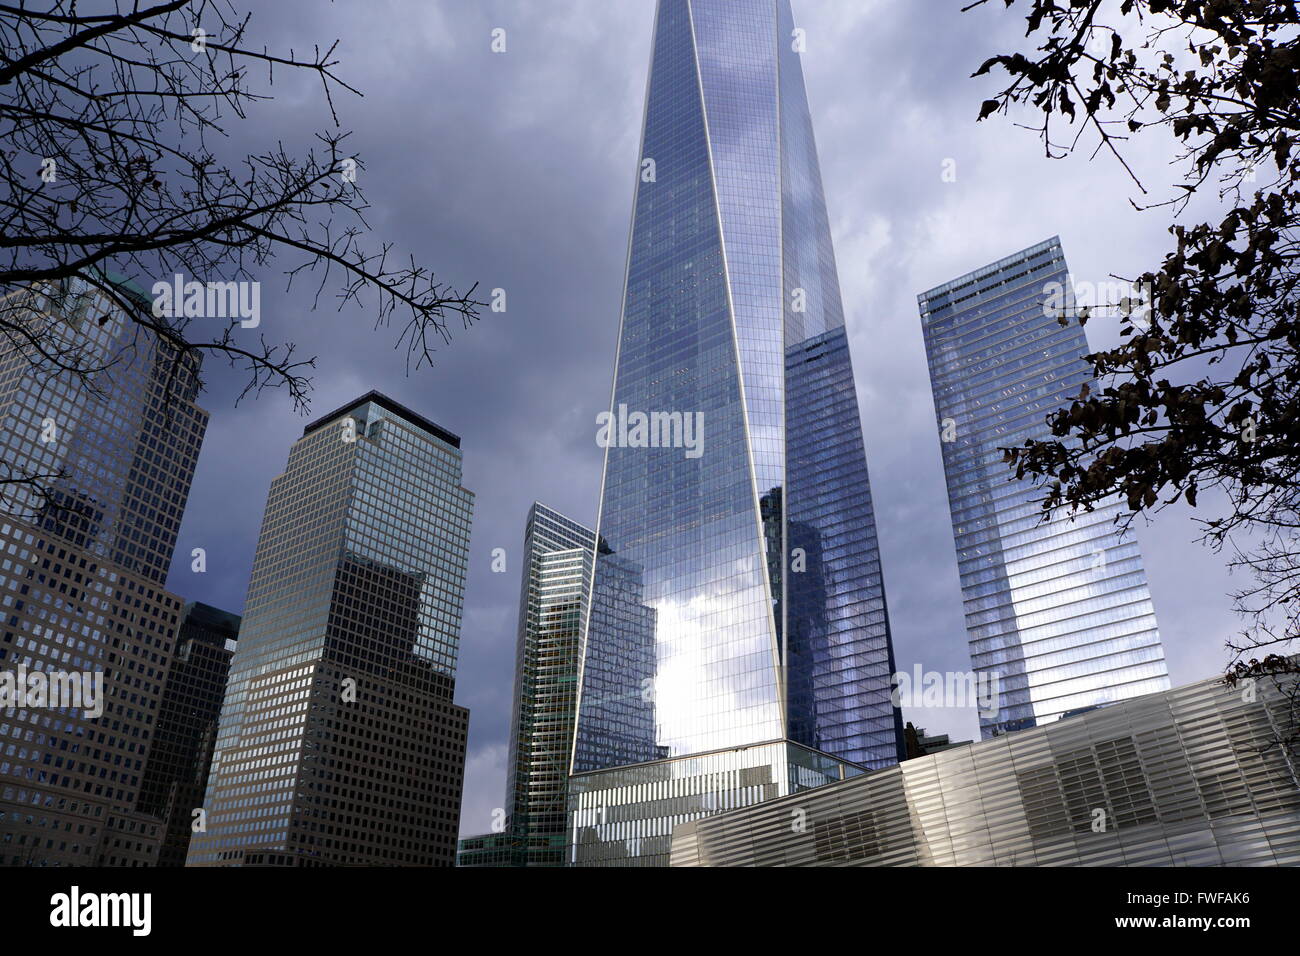 Ciel sombre sombre transforme le gratte-ciel du World Trade Centre en argent métallique, New York City, NY, USA Banque D'Images